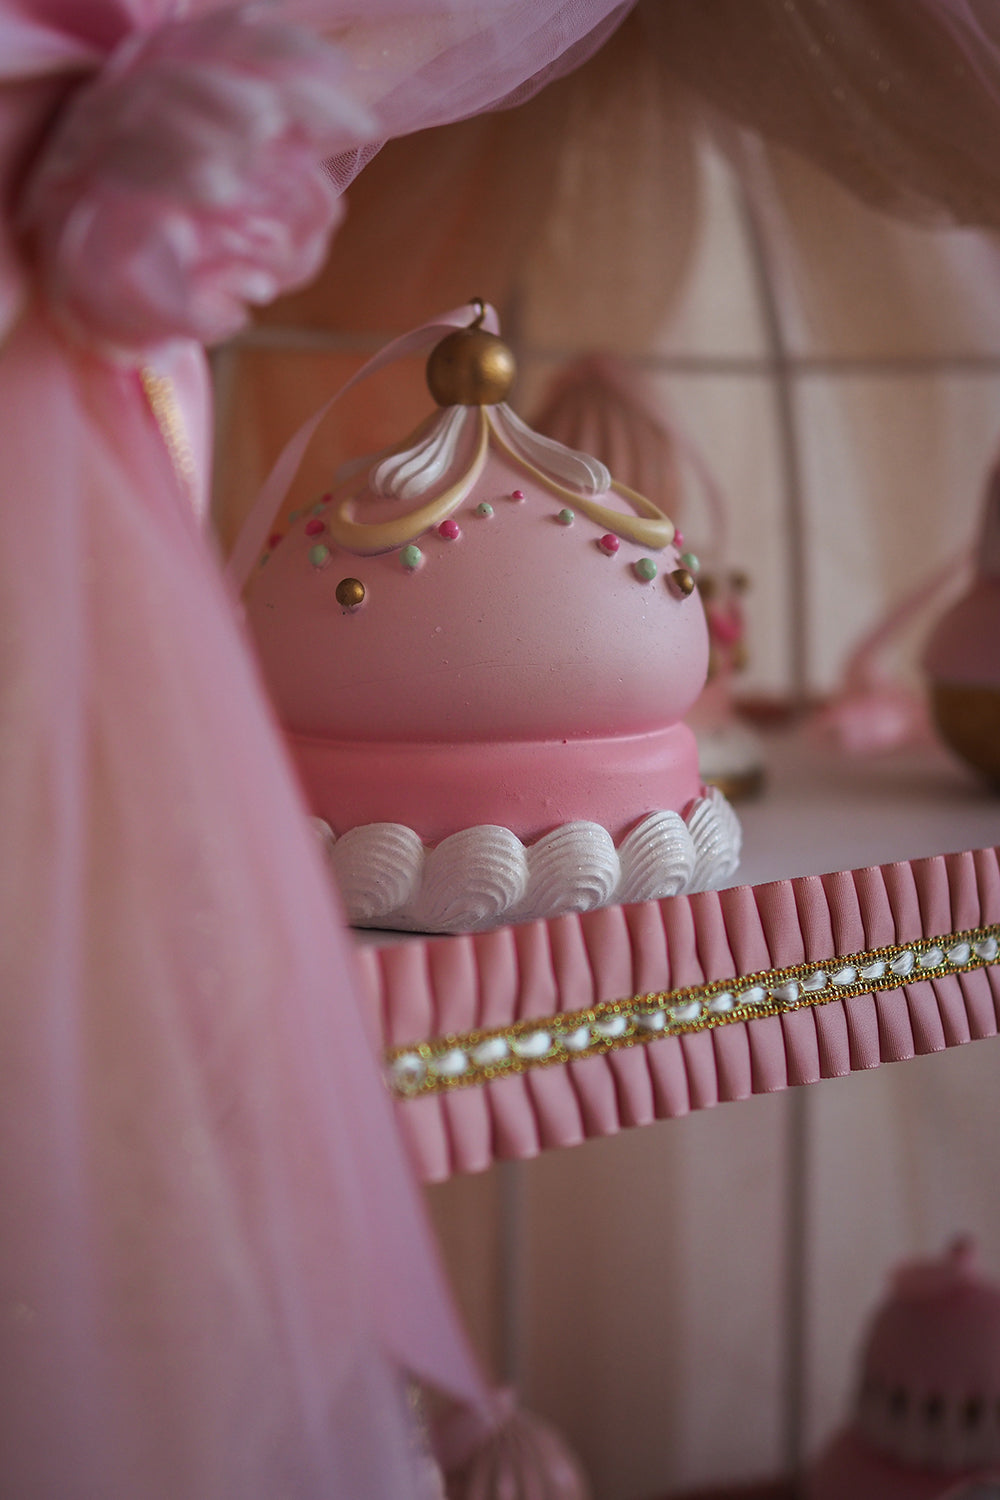 Viv! Christmas Kerstbeeld - Marie Antoinette Cupcake en Taart Display - roze - 95cm